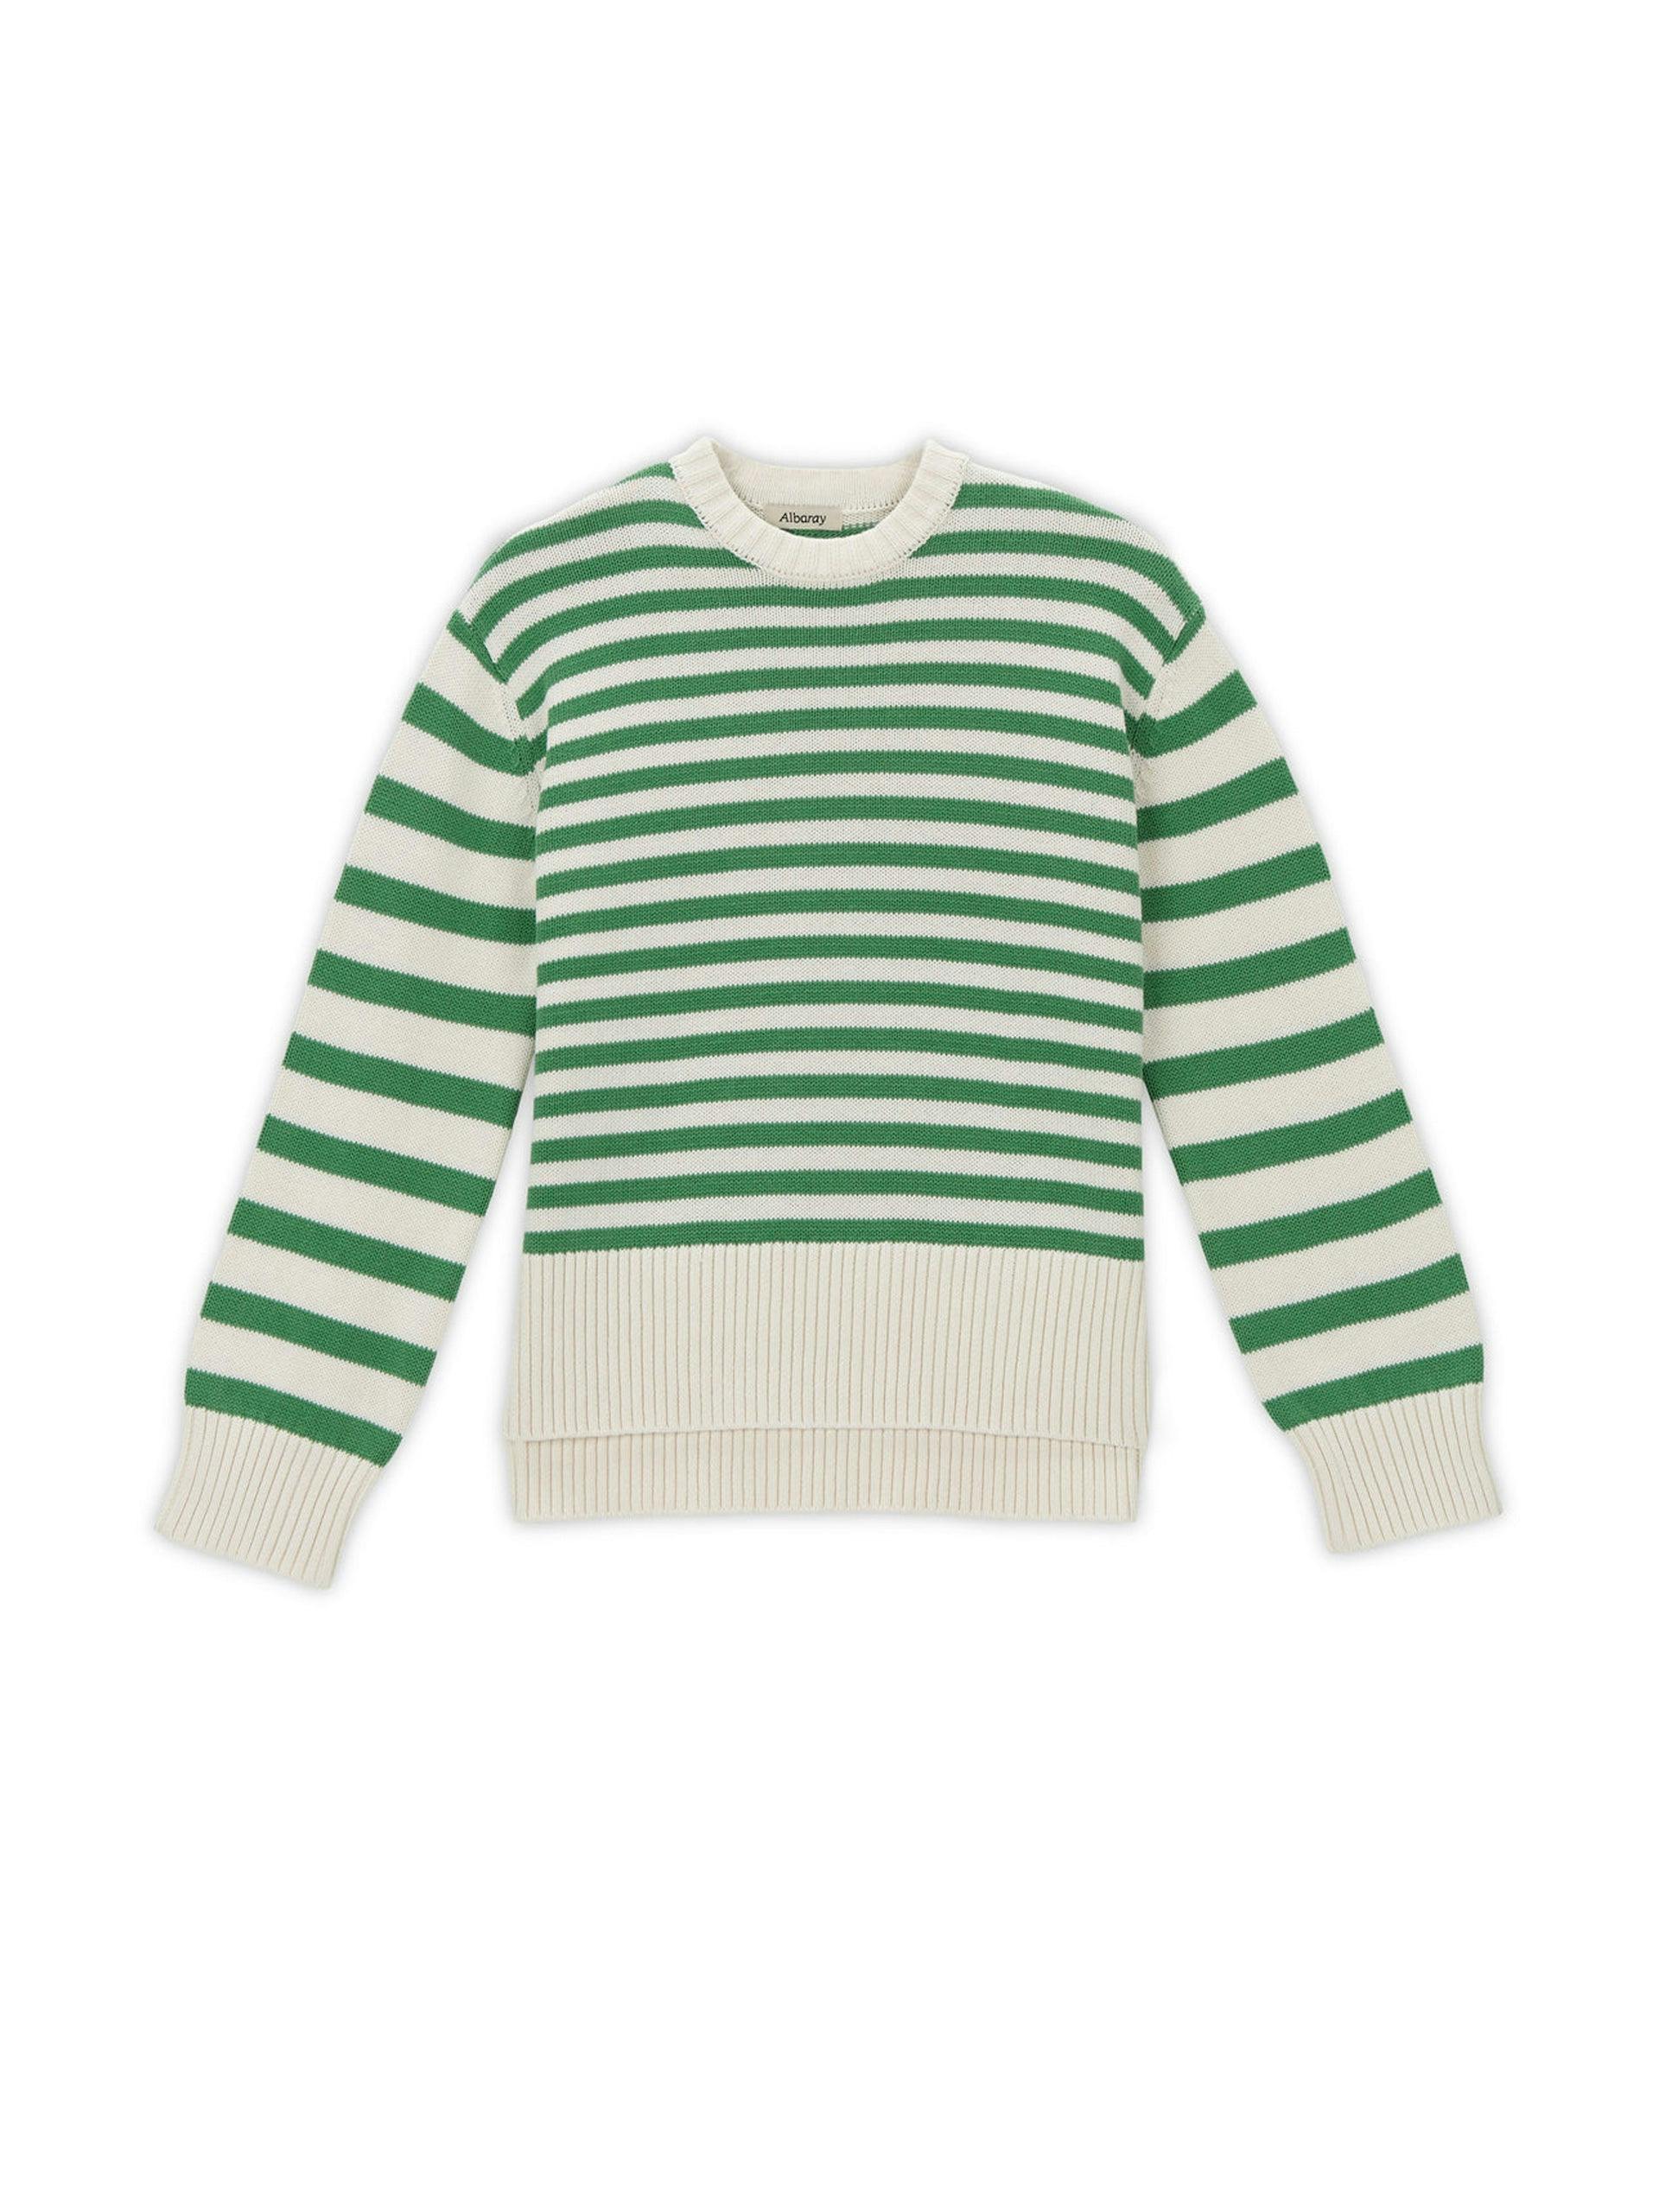 Green striped jumper